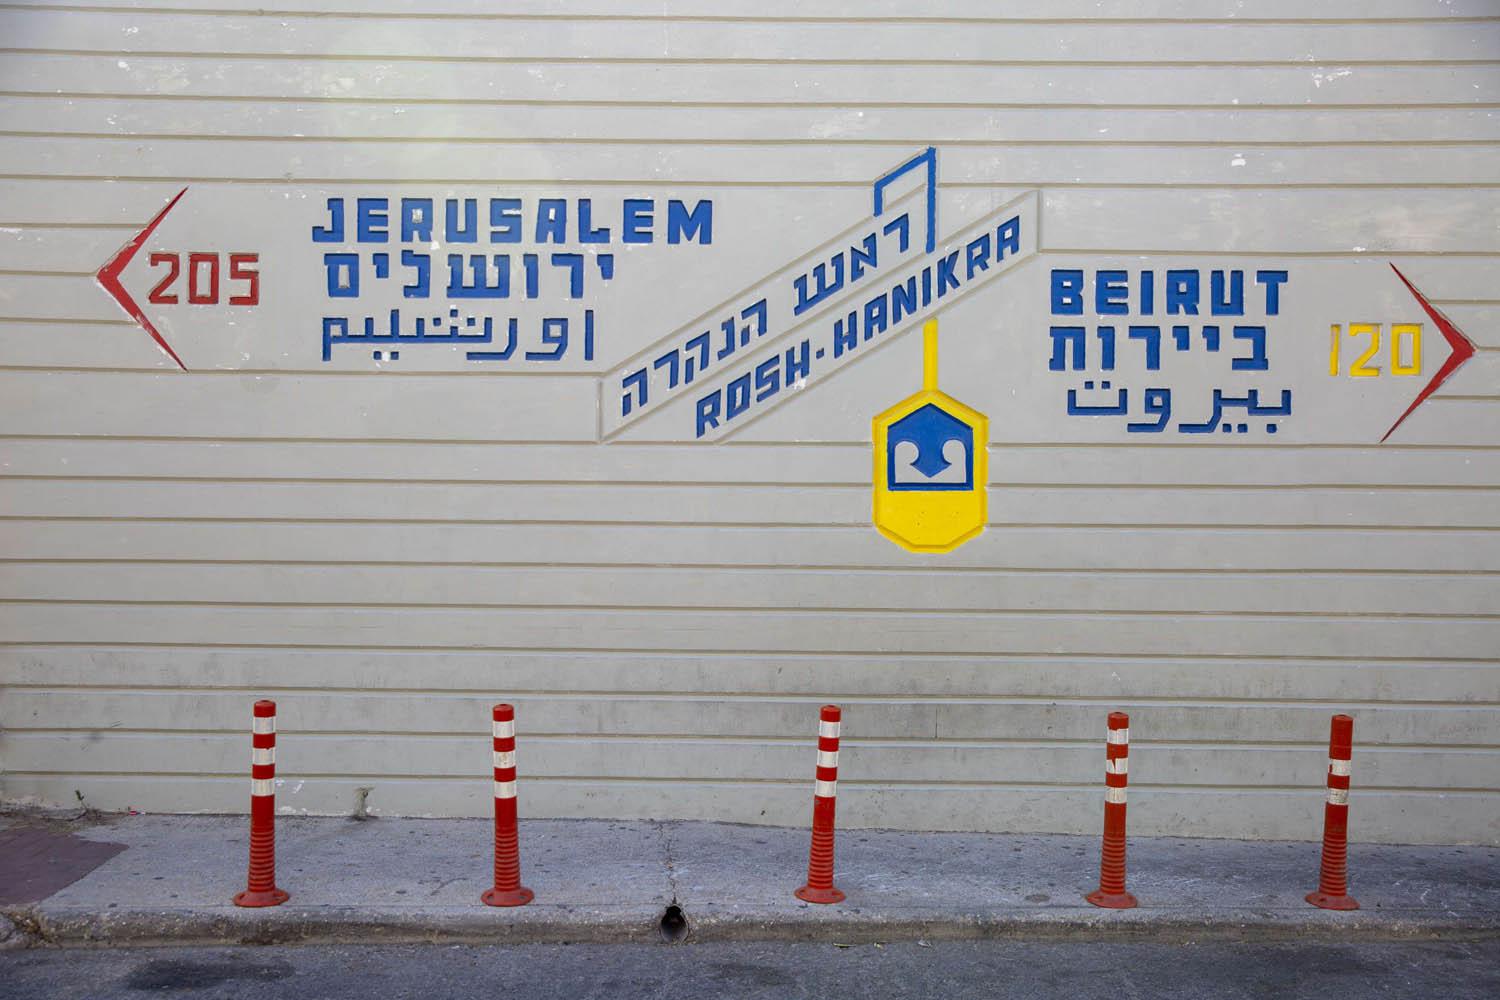 علامة في معبر الحدود بين لبنان واسرائيل تبين المسافات نحو بيروت والقدس